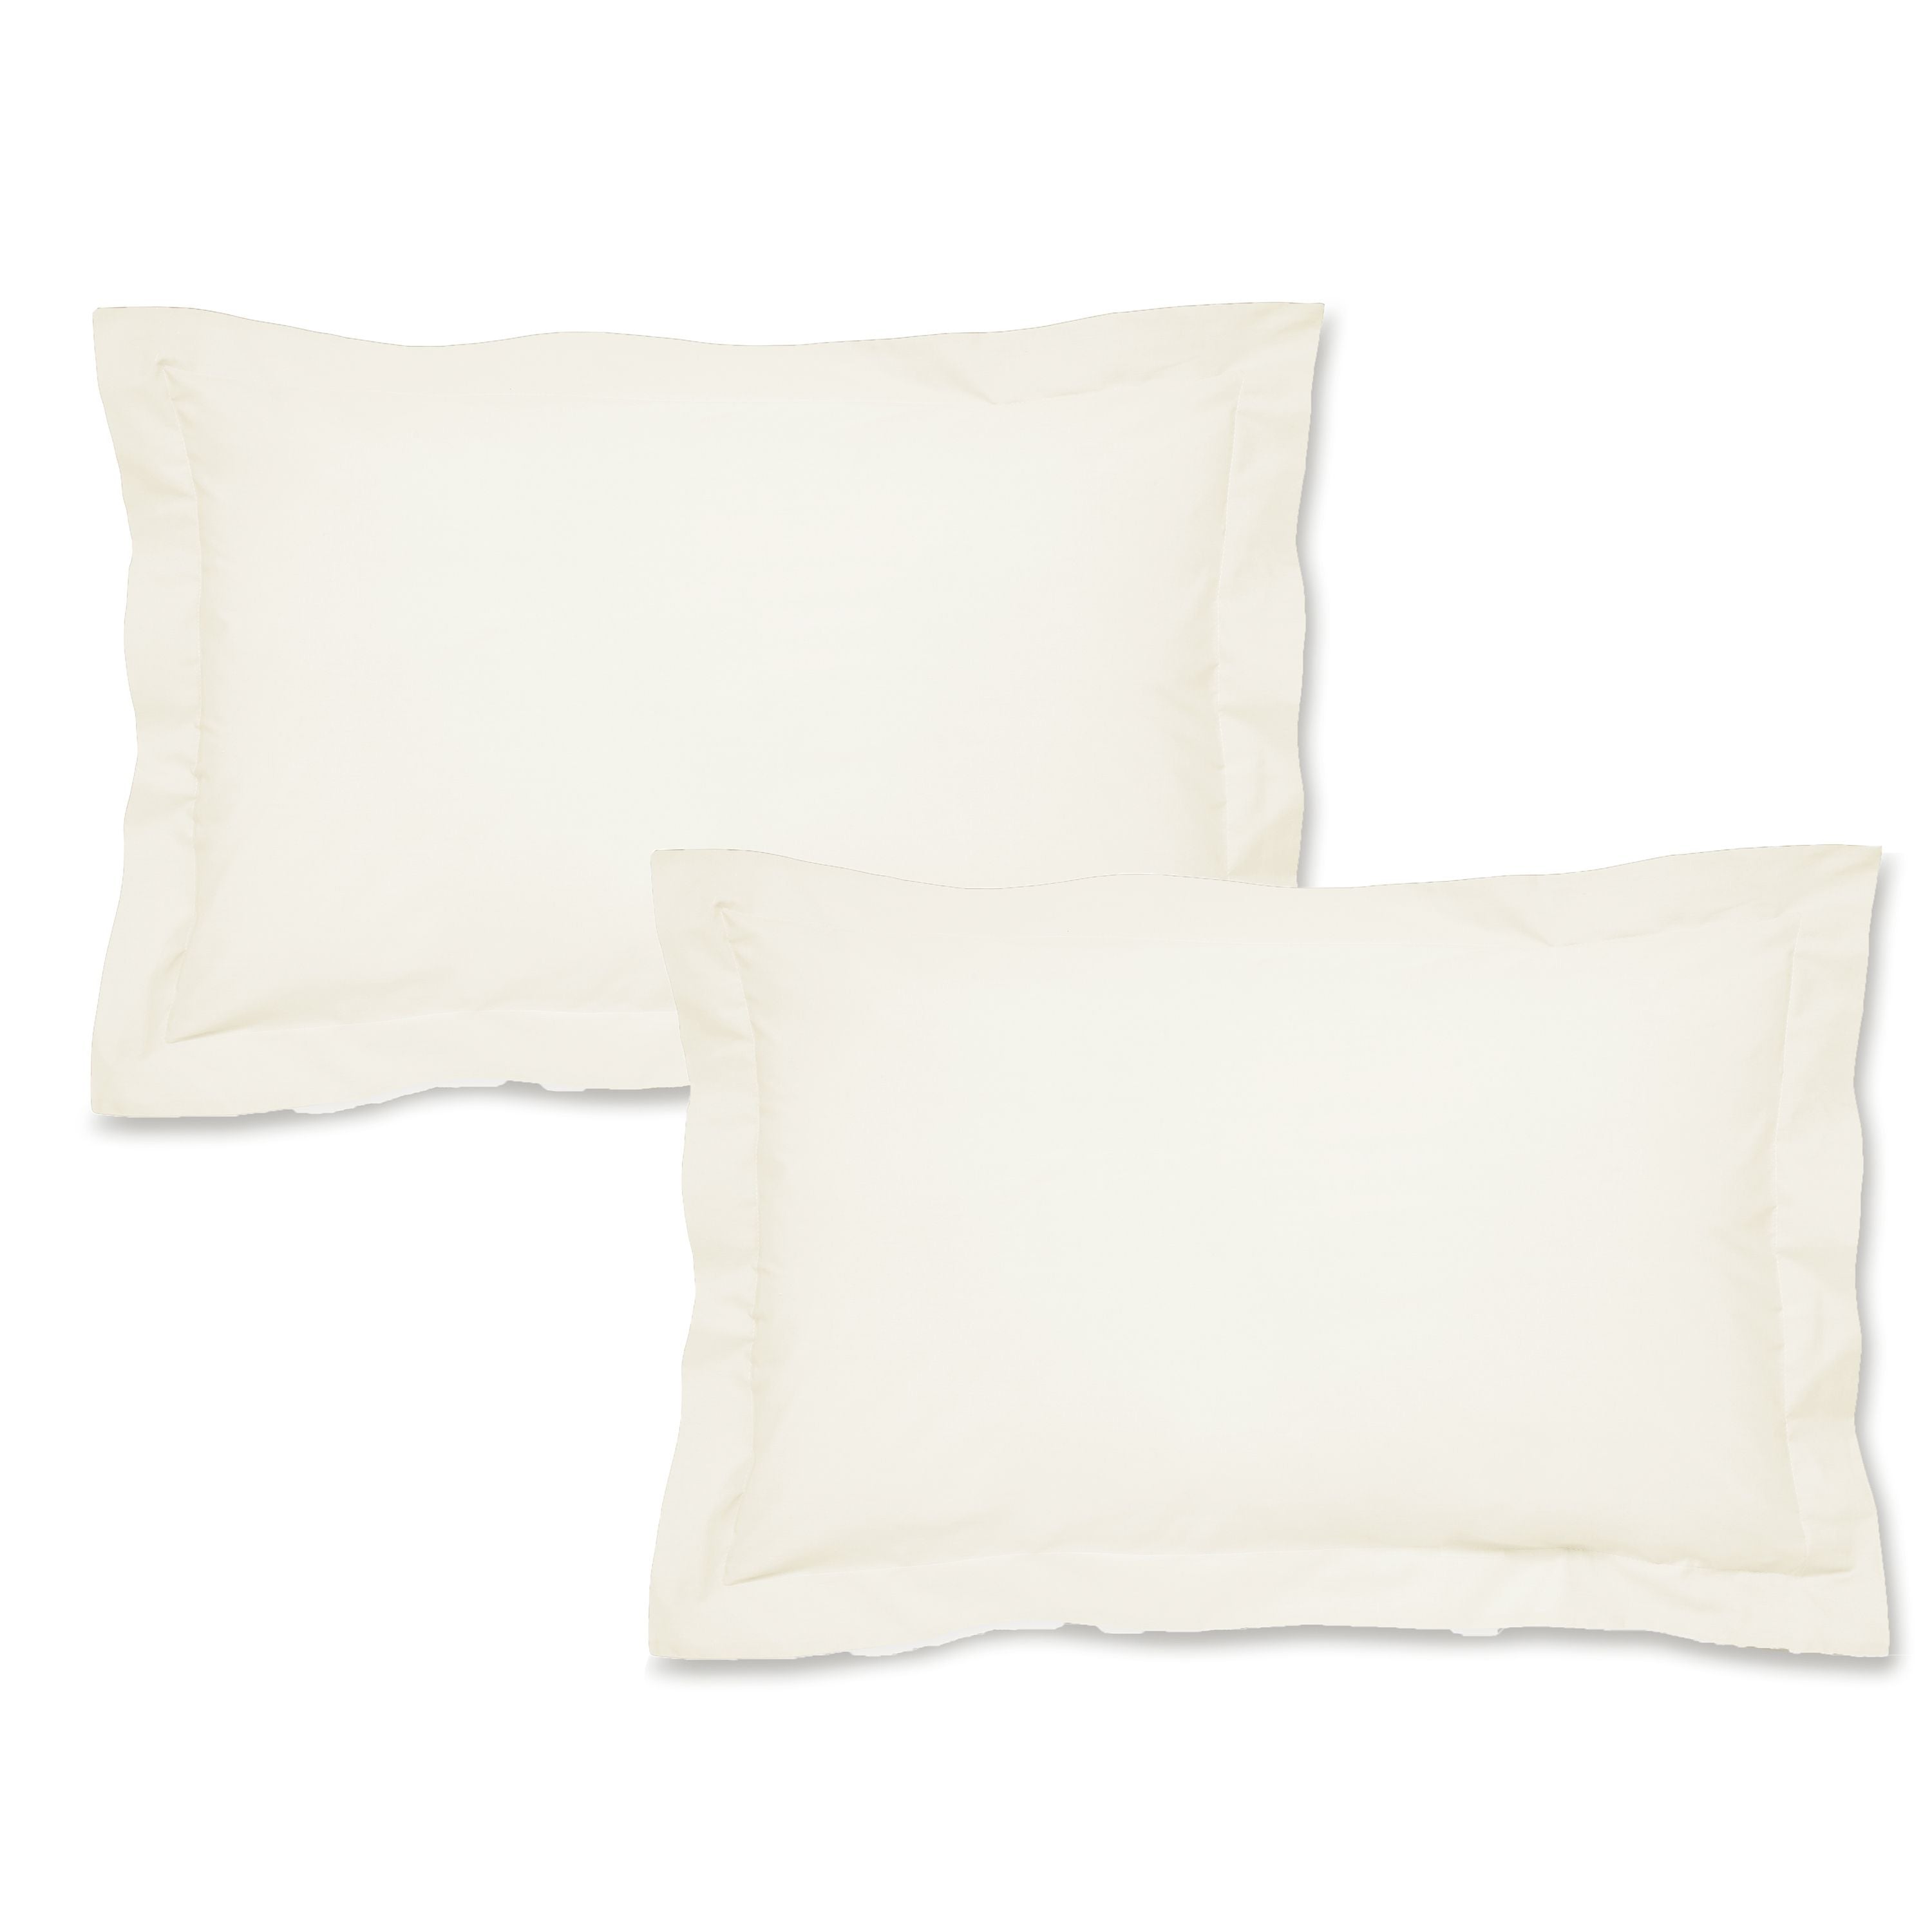 Oxford Pillowcase Pairs - White, Cream & Grey